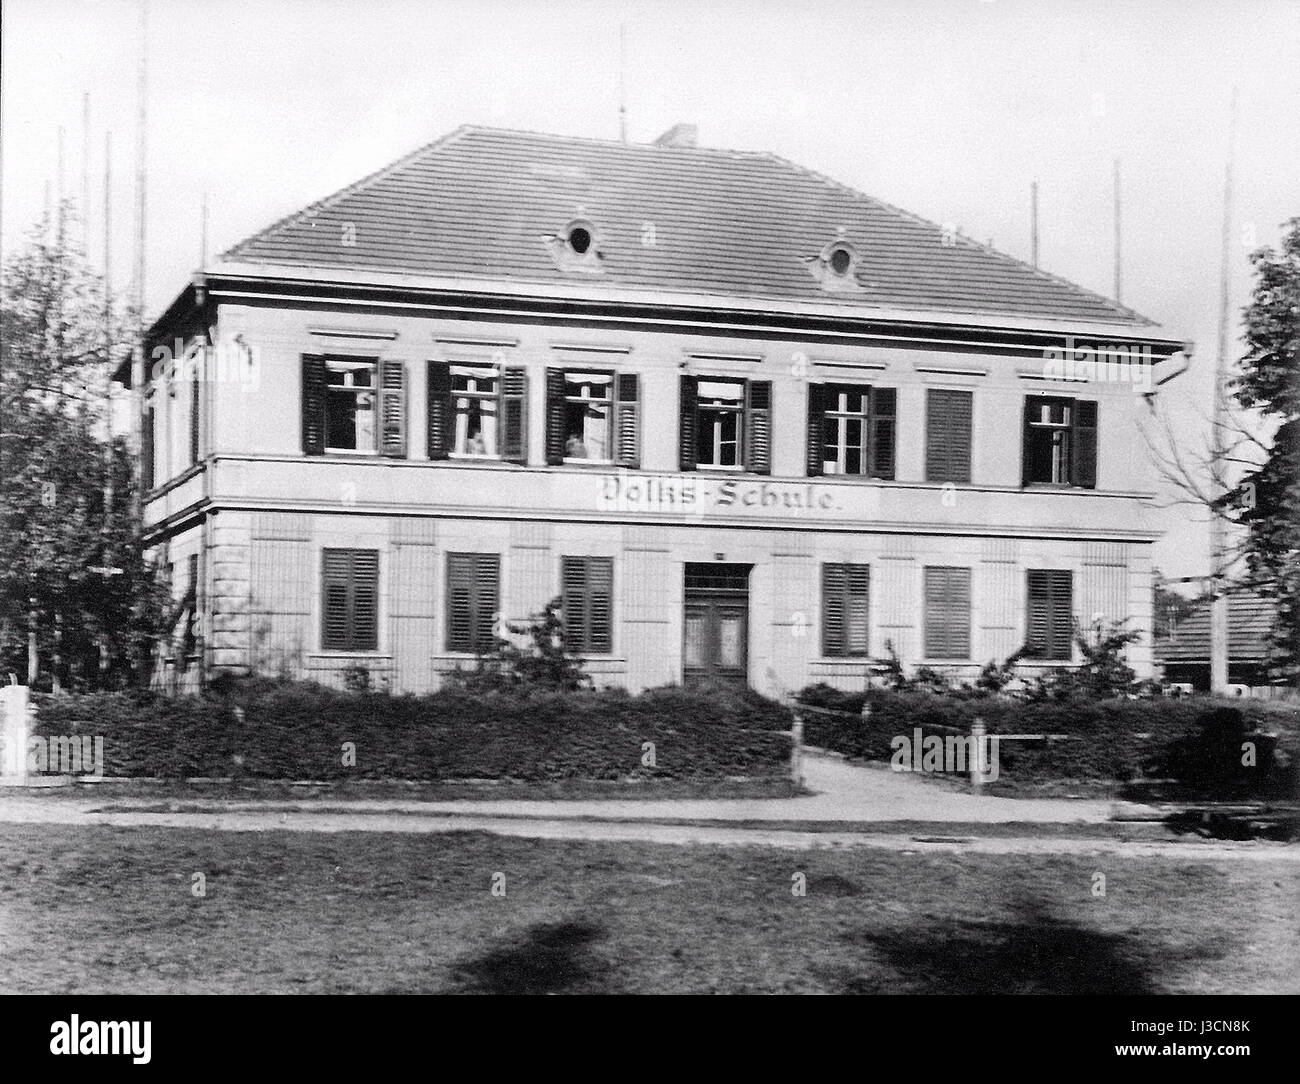 Ebenthal Gradnitz alte Volks Schule 1931 eingescannt Stock Photo